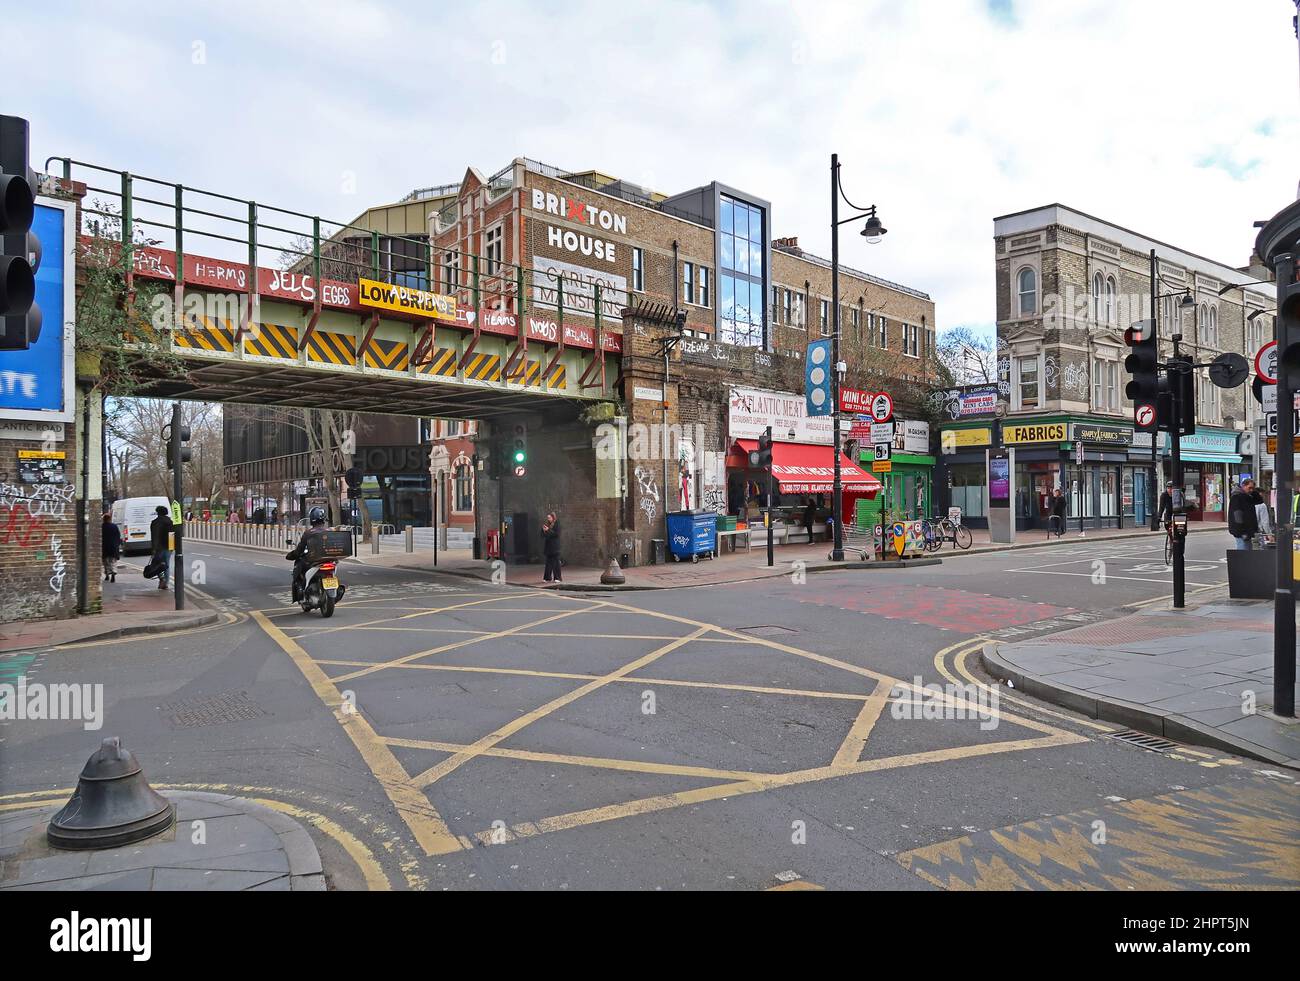 Brixton, Londres, Reino Unido. El concurrido cruce de Coldharbor Lane y Atlantic Road, que muestra el puente ferroviario, las tiendas y el nuevo edificio de Brixton House. Foto de stock